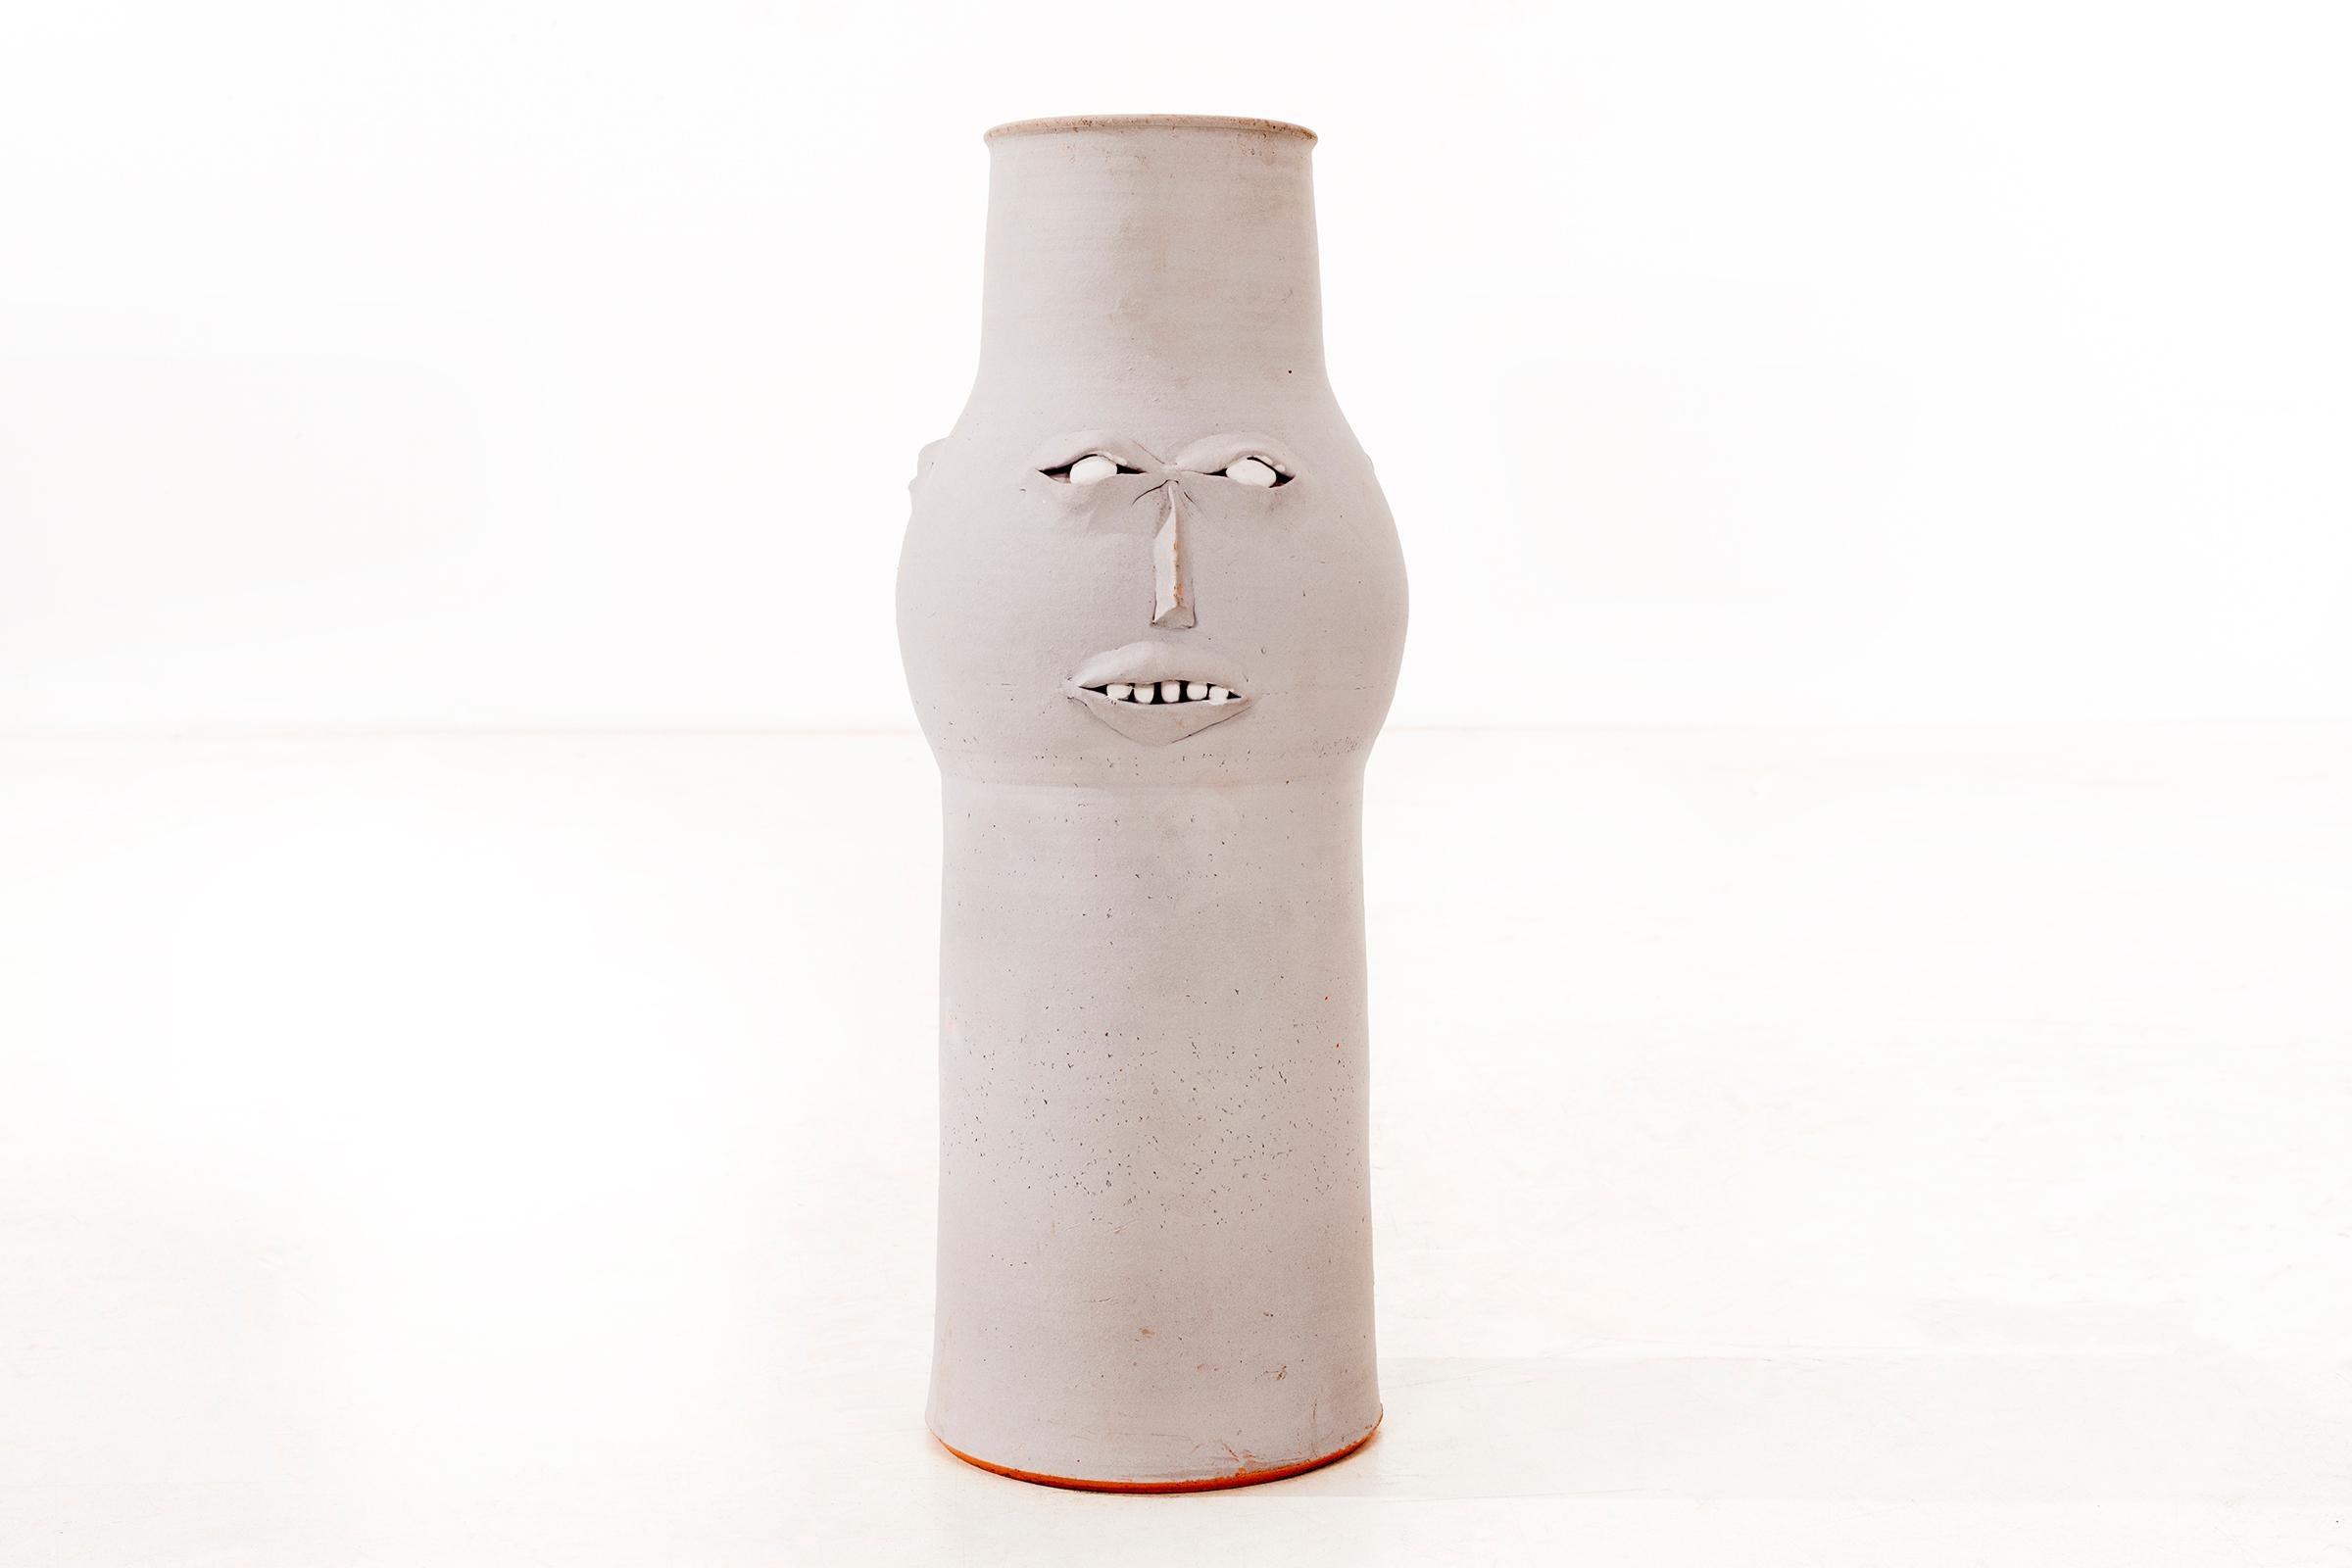 Vase à visage stylisé de Clyde Burt en grès émaillé gris mat avec détails faciaux manipulés et appliqués.
Signé sur la face inférieure : [CB].
Origine américaine, vers 1965.